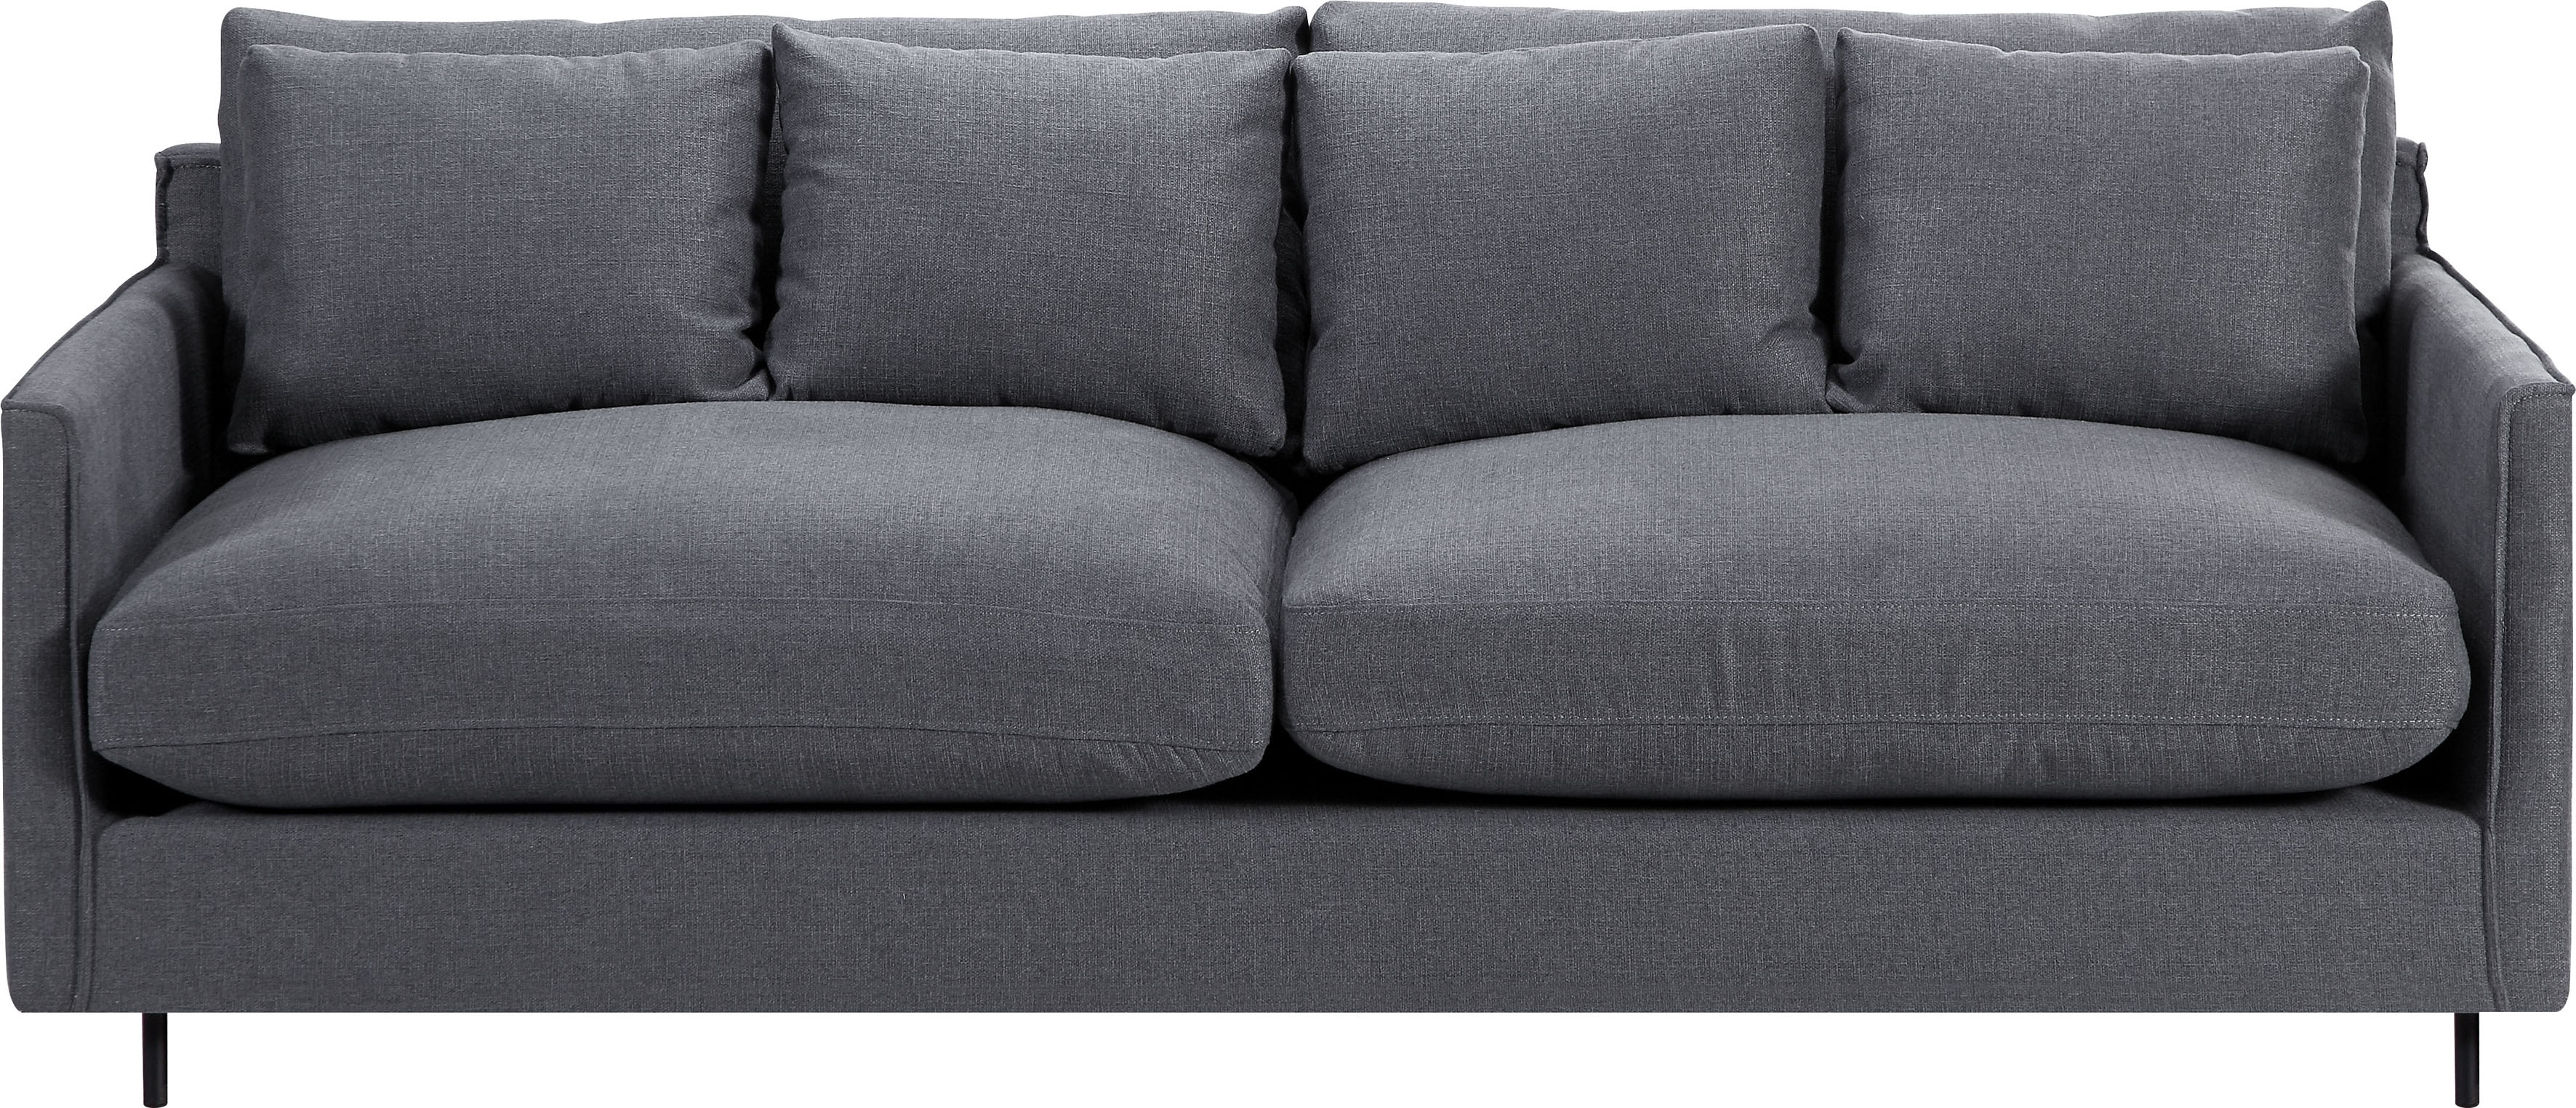 ATLANTIC home collection 3-Sitzer, Sofa, skandinvisch im Design, extra weich, Füllung mit Federn 3